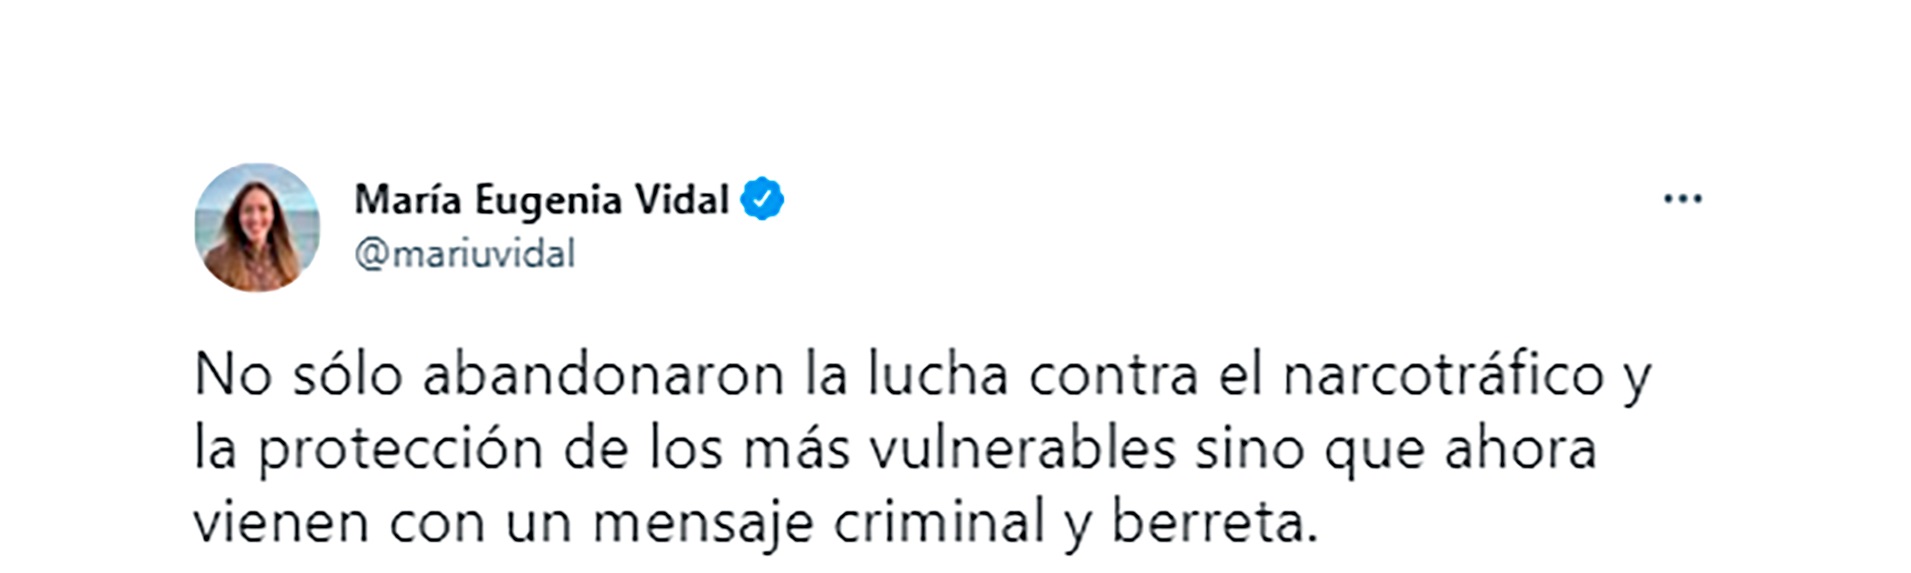 El mensaje de María Eugenia Vidal en Twitter